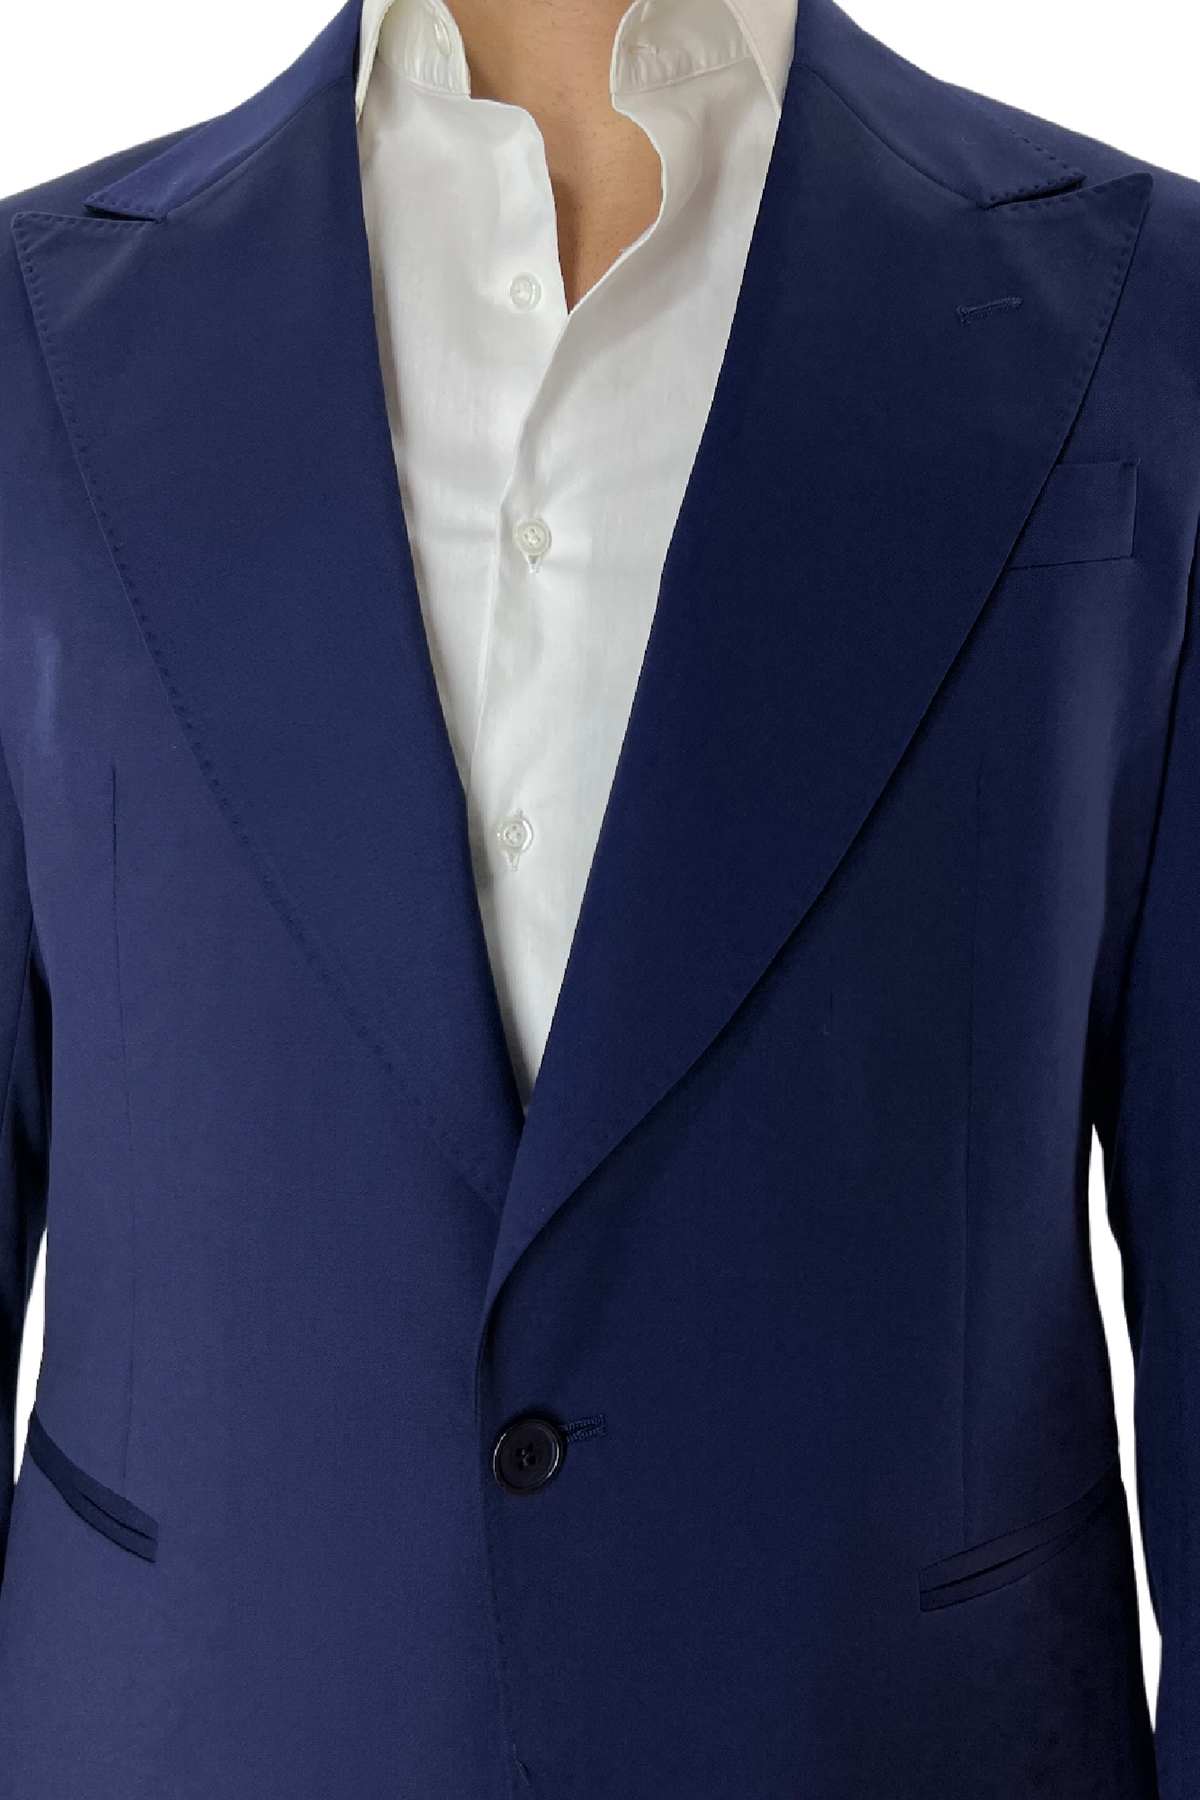 Abito uomo con giacca monopetto blu royal rever a lancia e pantalone tasca america in fresco lana 100% Vitale Barberis Canonico